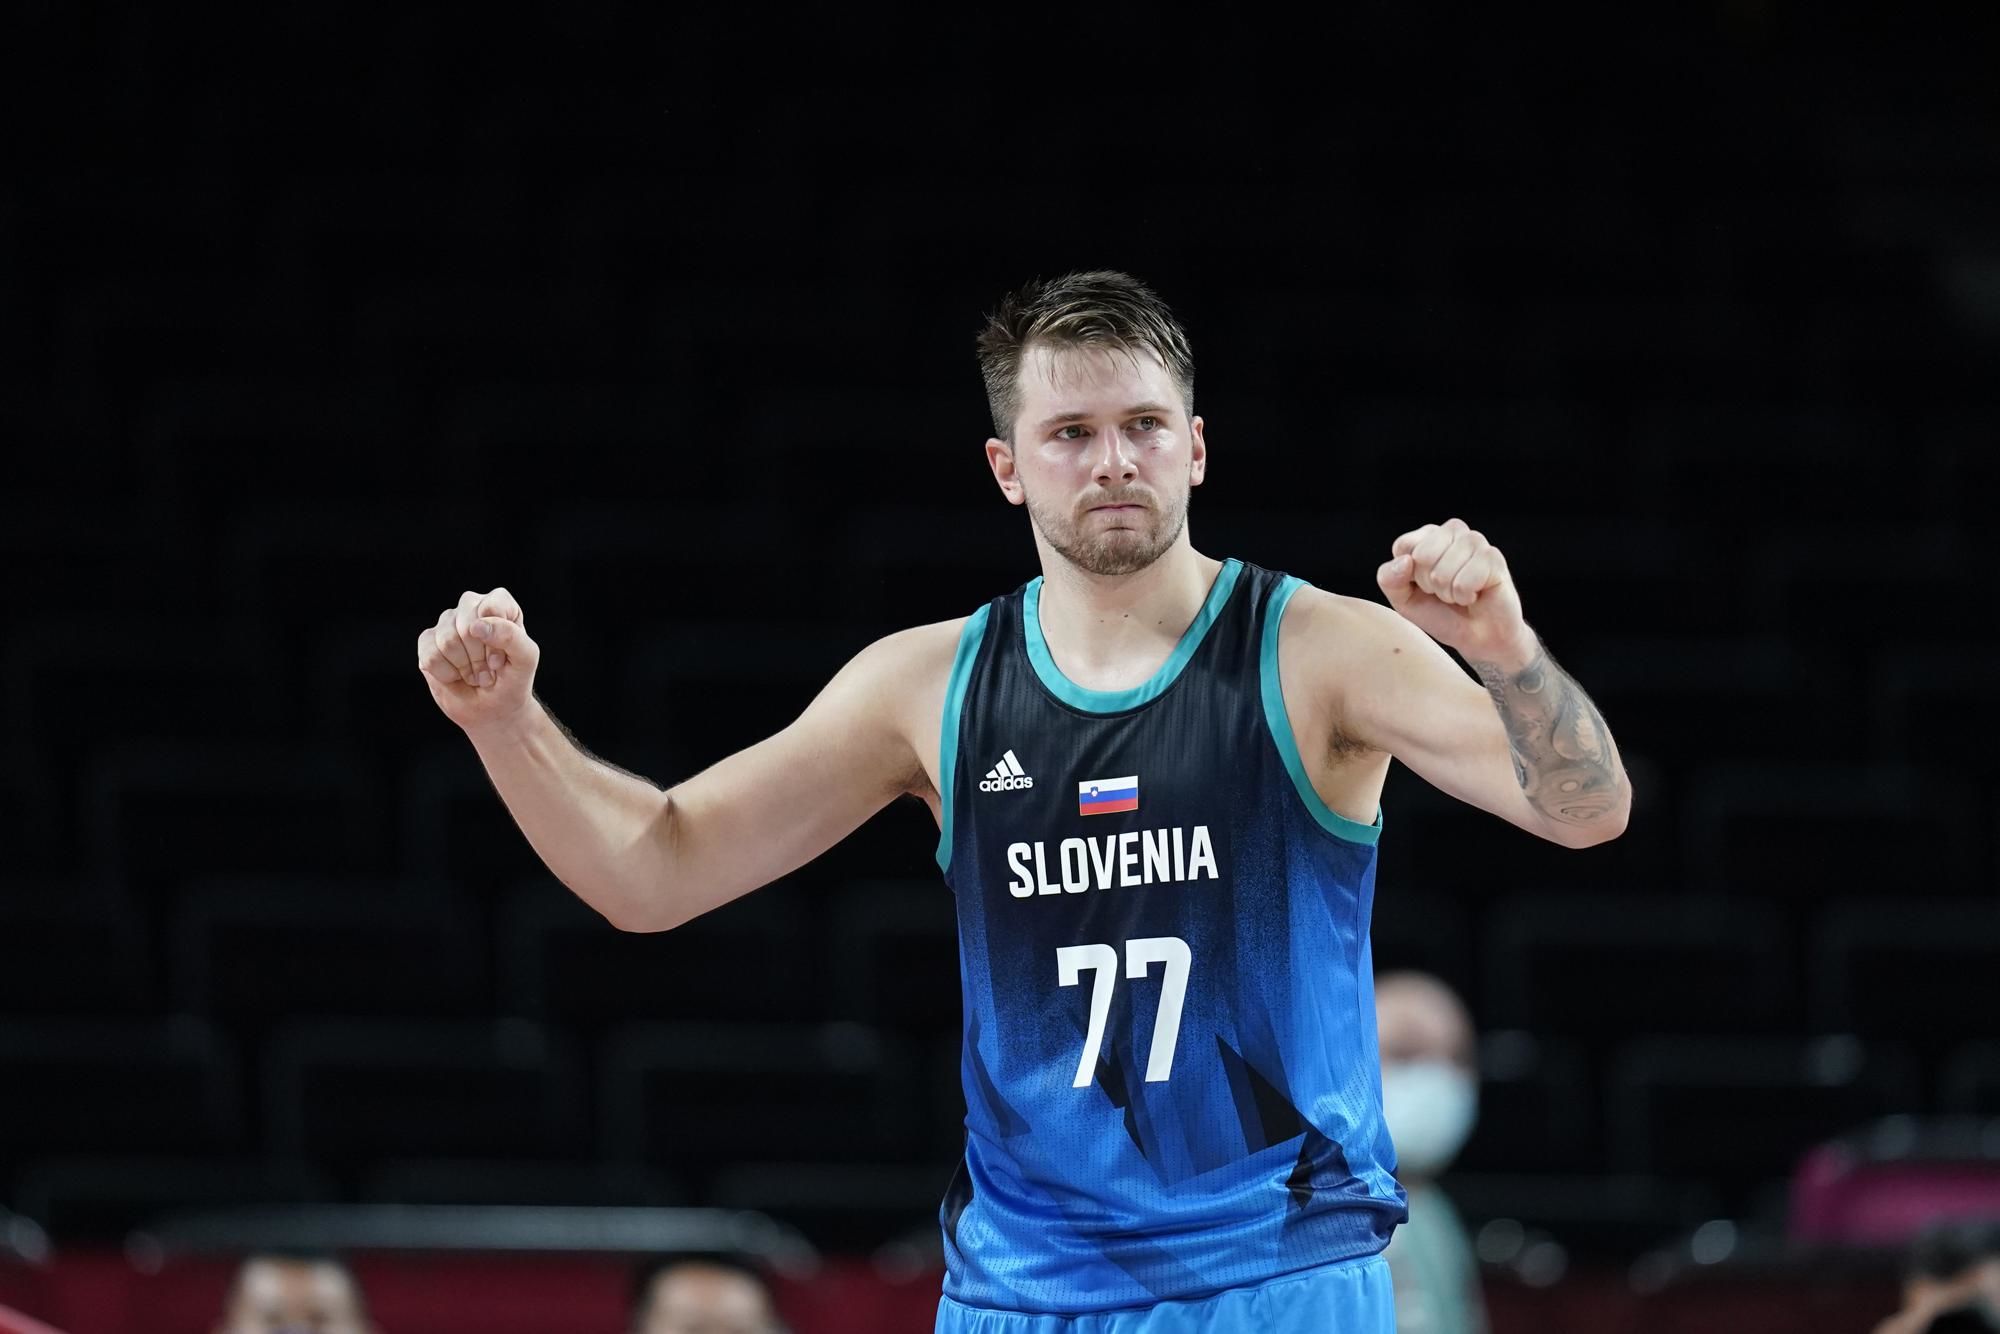 Германия - Словения. Прогноз и ставки на баскетбол. 28 августа 2022 года